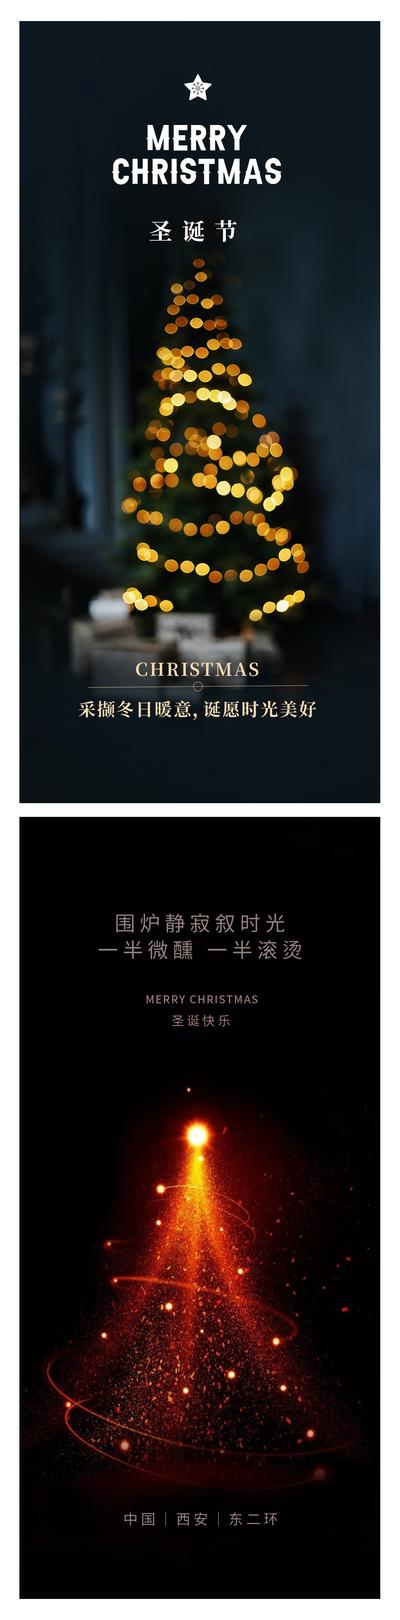 【南门网】广告 海报 节日 圣诞节 圣诞树 灯光 火花 夜晚 温馨 深色